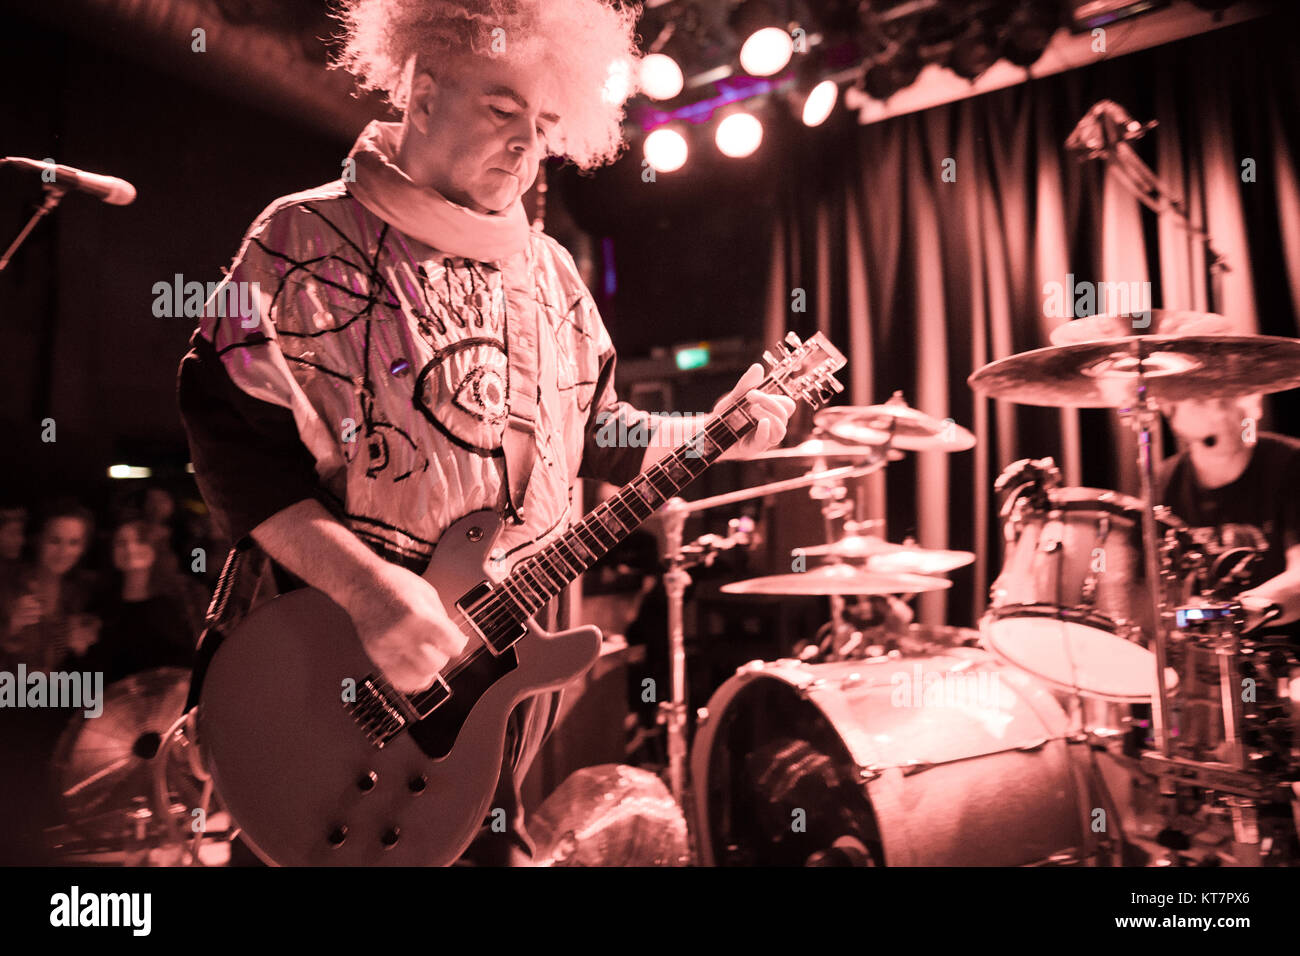 I fanghi americano metal band i Melvins esegue un concerto dal vivo al Blå in Oslo. Qui il chitarrista e cantante Buzz Osborne è visto dal vivo sul palco. Norvegia, 10/06 2016. Foto Stock